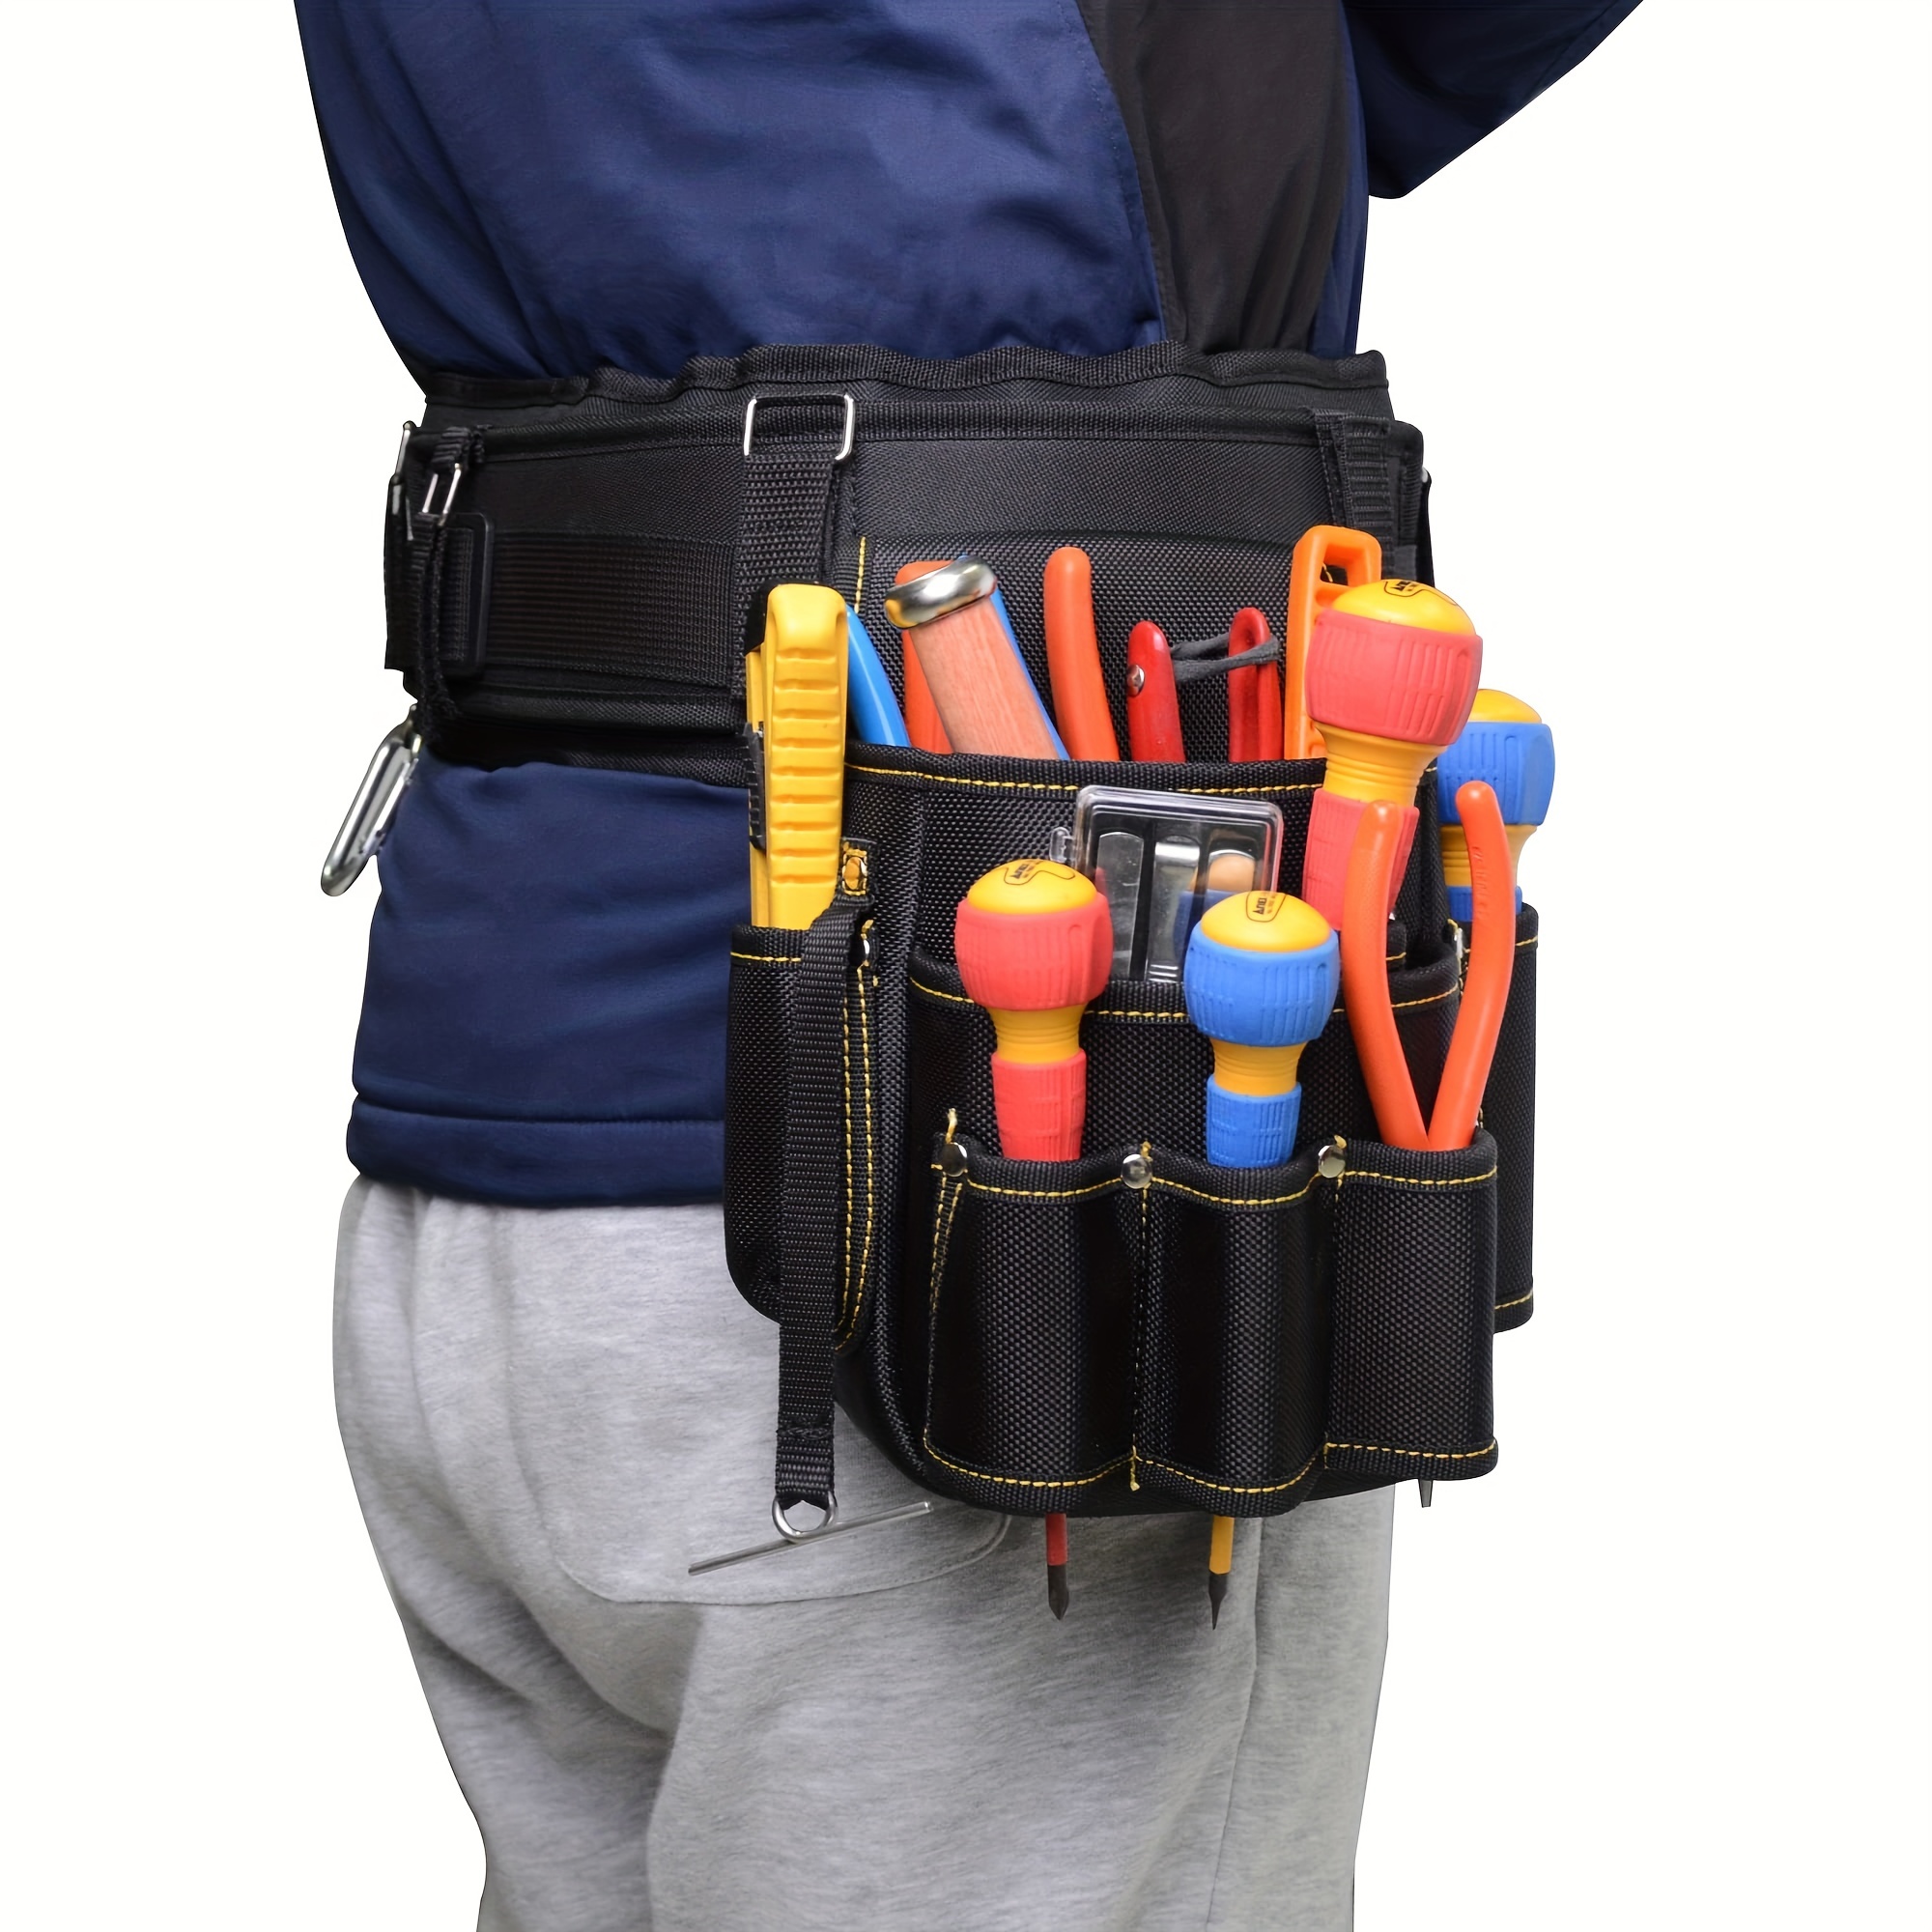 Bolsa de herramientas Oxford de 6 bolsillos, cinturón ajustable,  construcción duradera para electricista, técnico, bolsillo en la cintura,  bolsa de